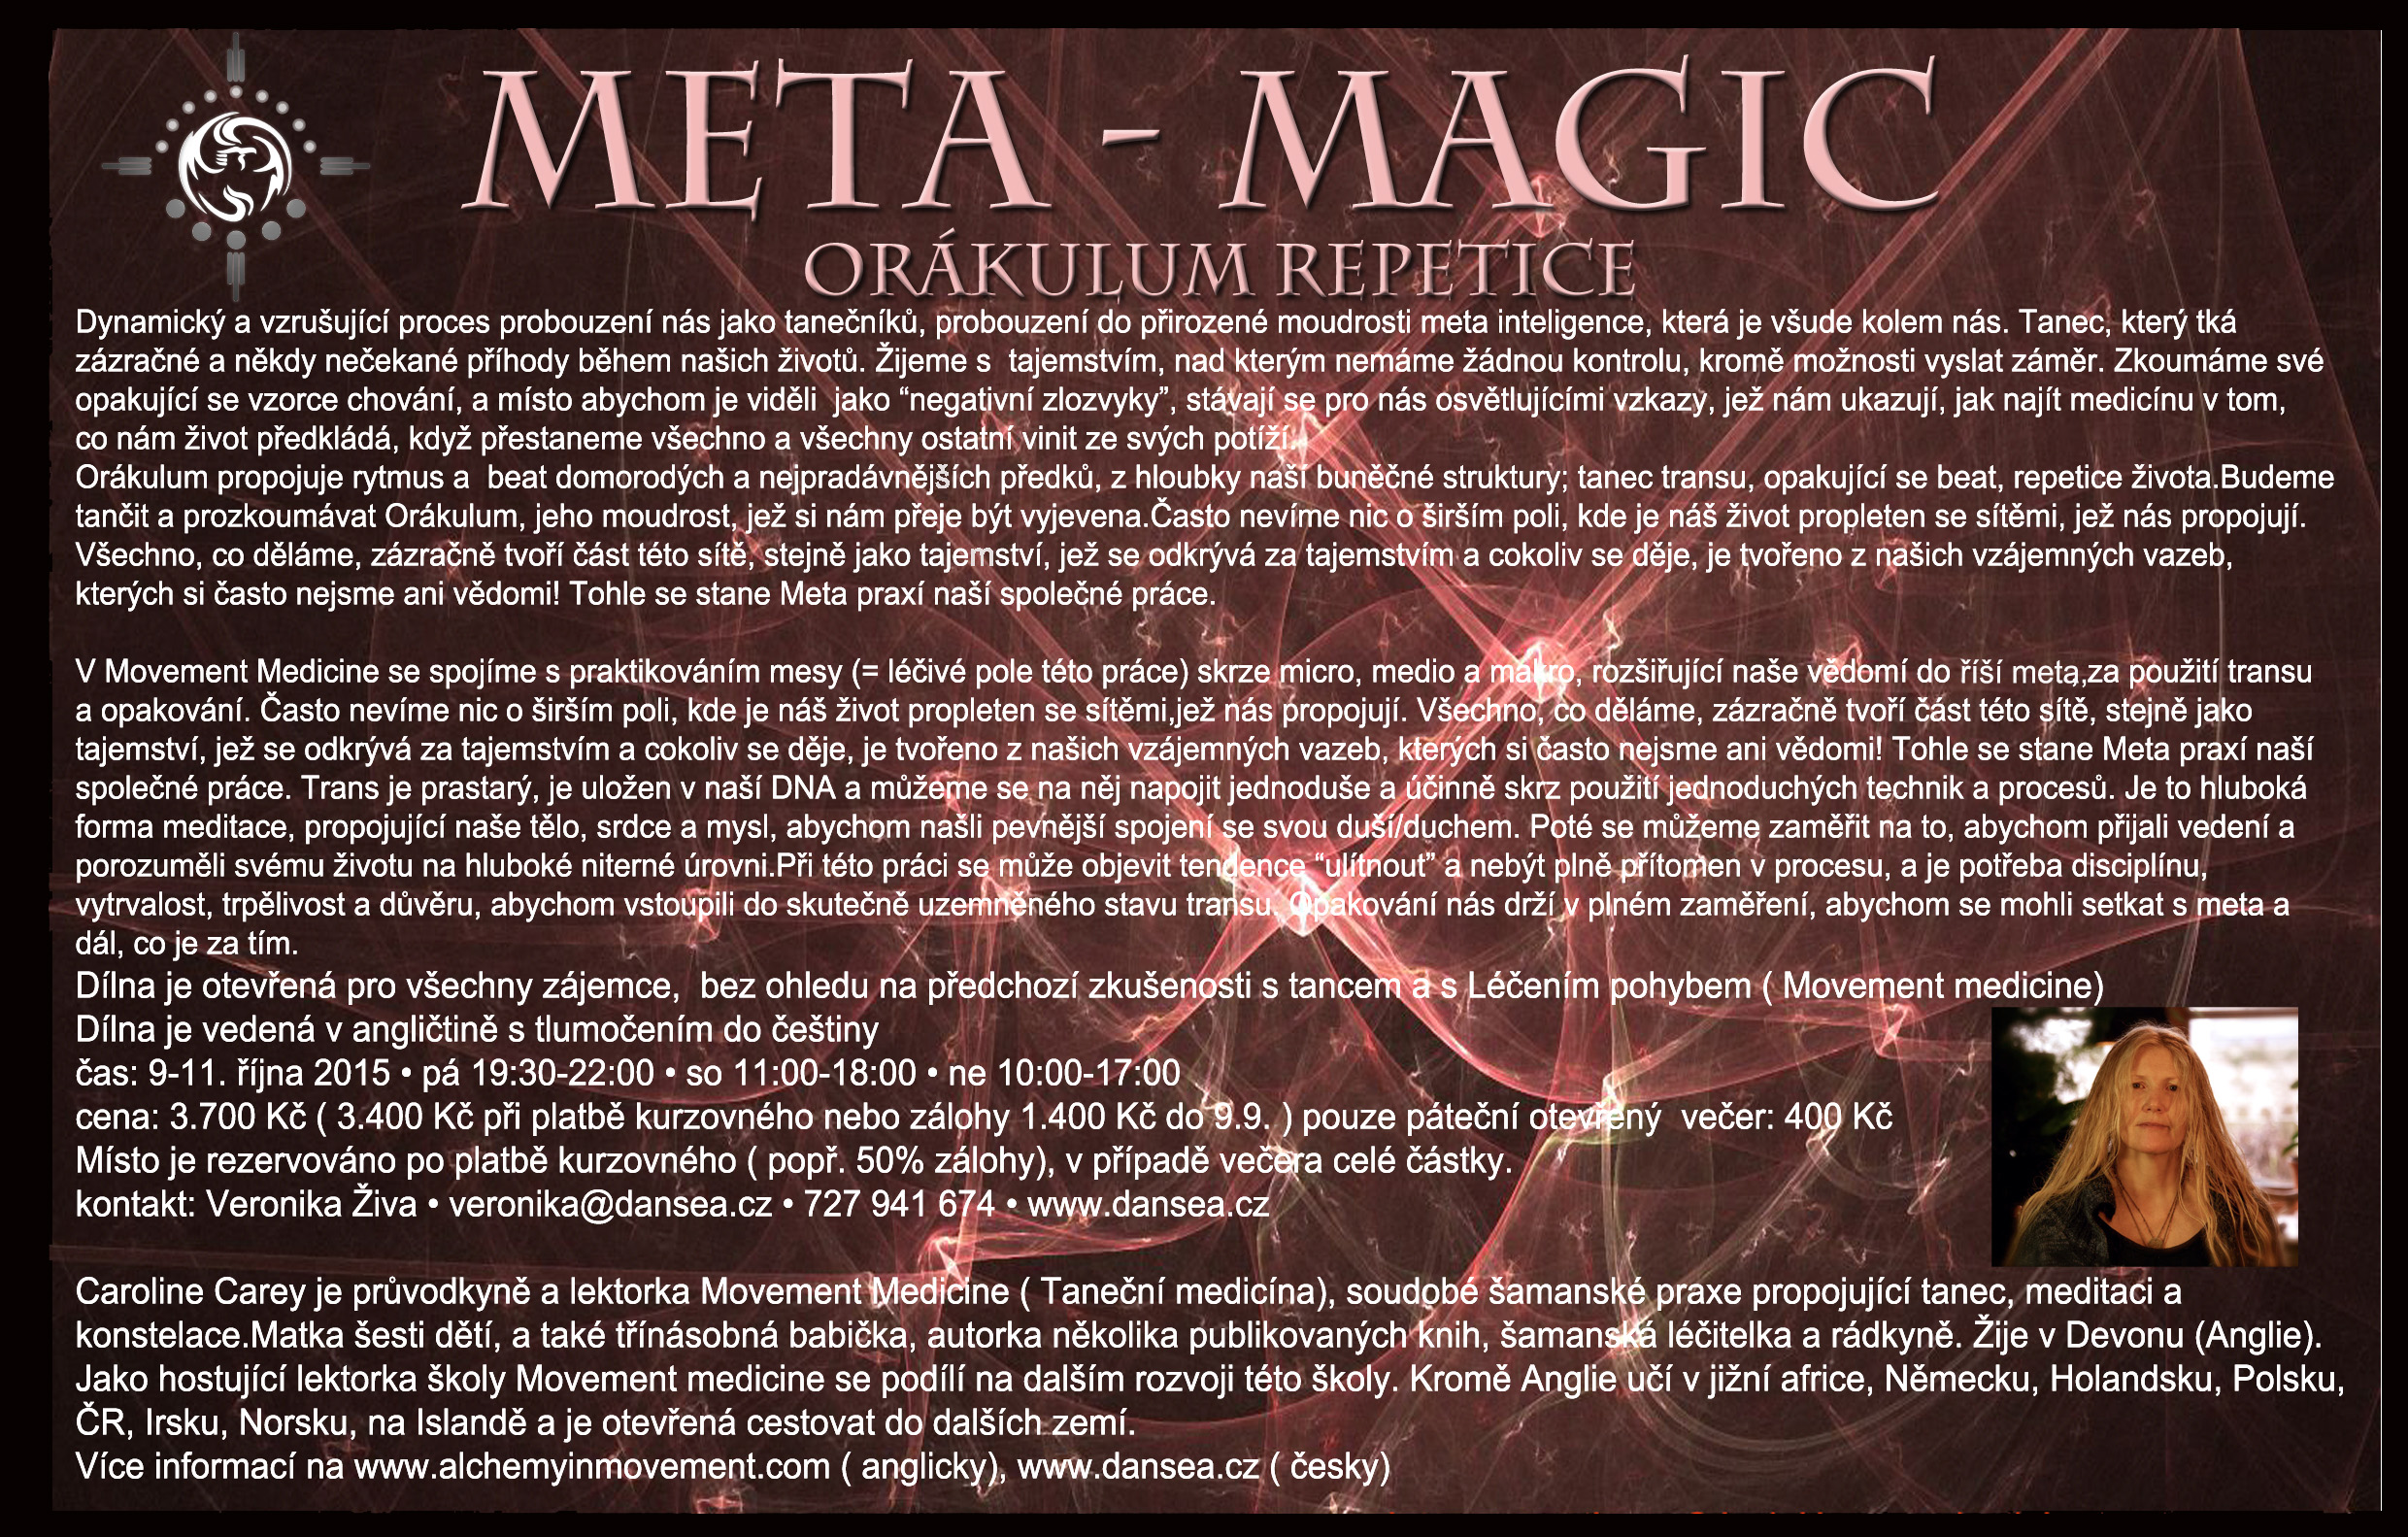 Meta magic workshop